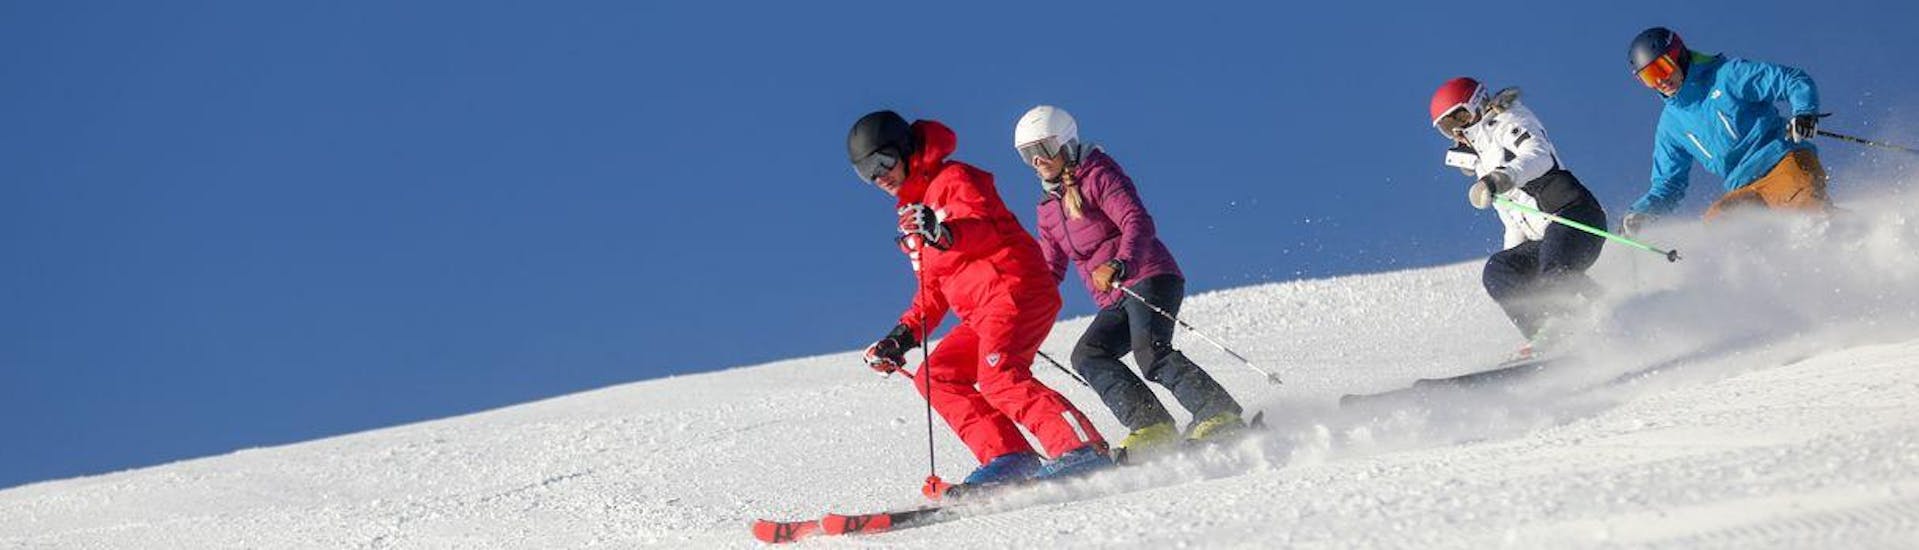 Clases de esquí para adultos.